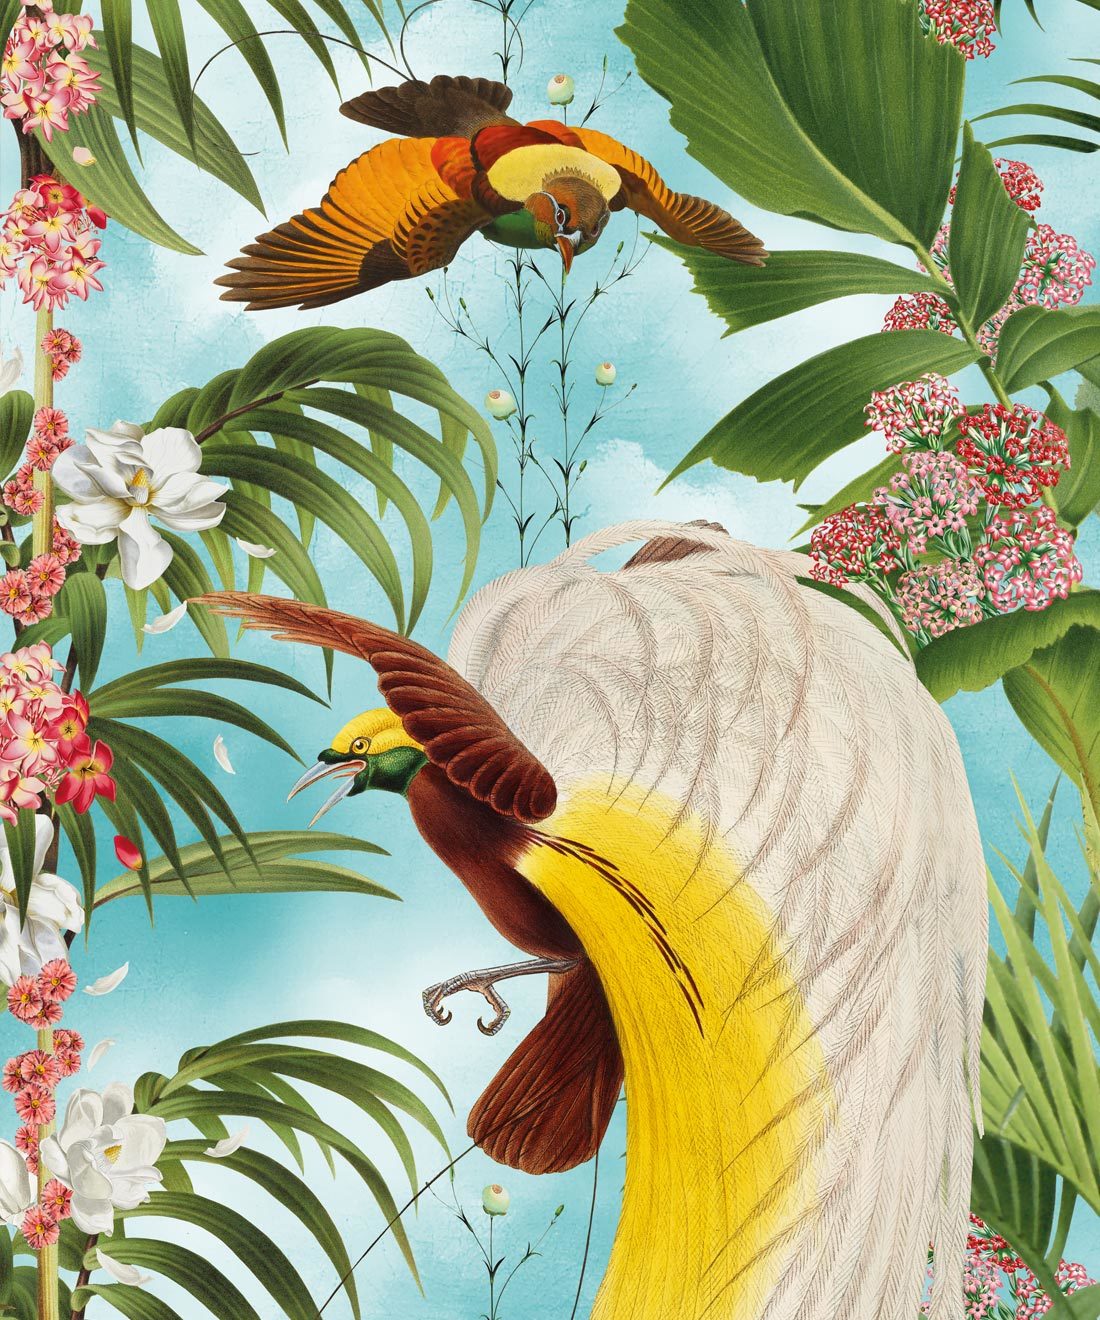 Fond d'écran Paradiso avec oiseaux exotiques et palmiers tropicaux